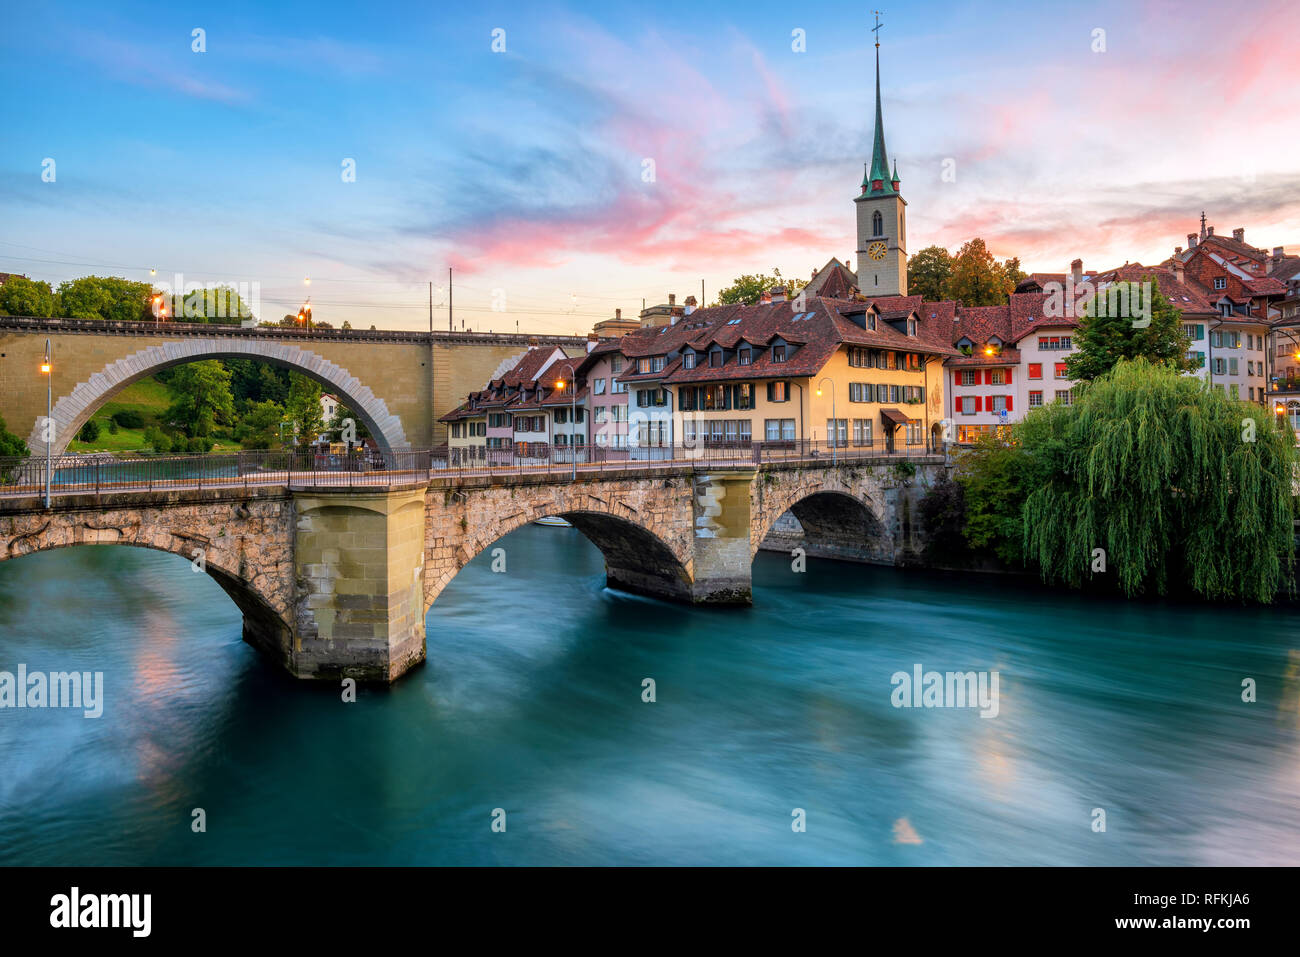 Vieille Ville historique de la ville de Berne, des toits, des ponts sur la rivière Aare et clocher de l'église sur le coucher du soleil spectaculaire, Suisse Banque D'Images